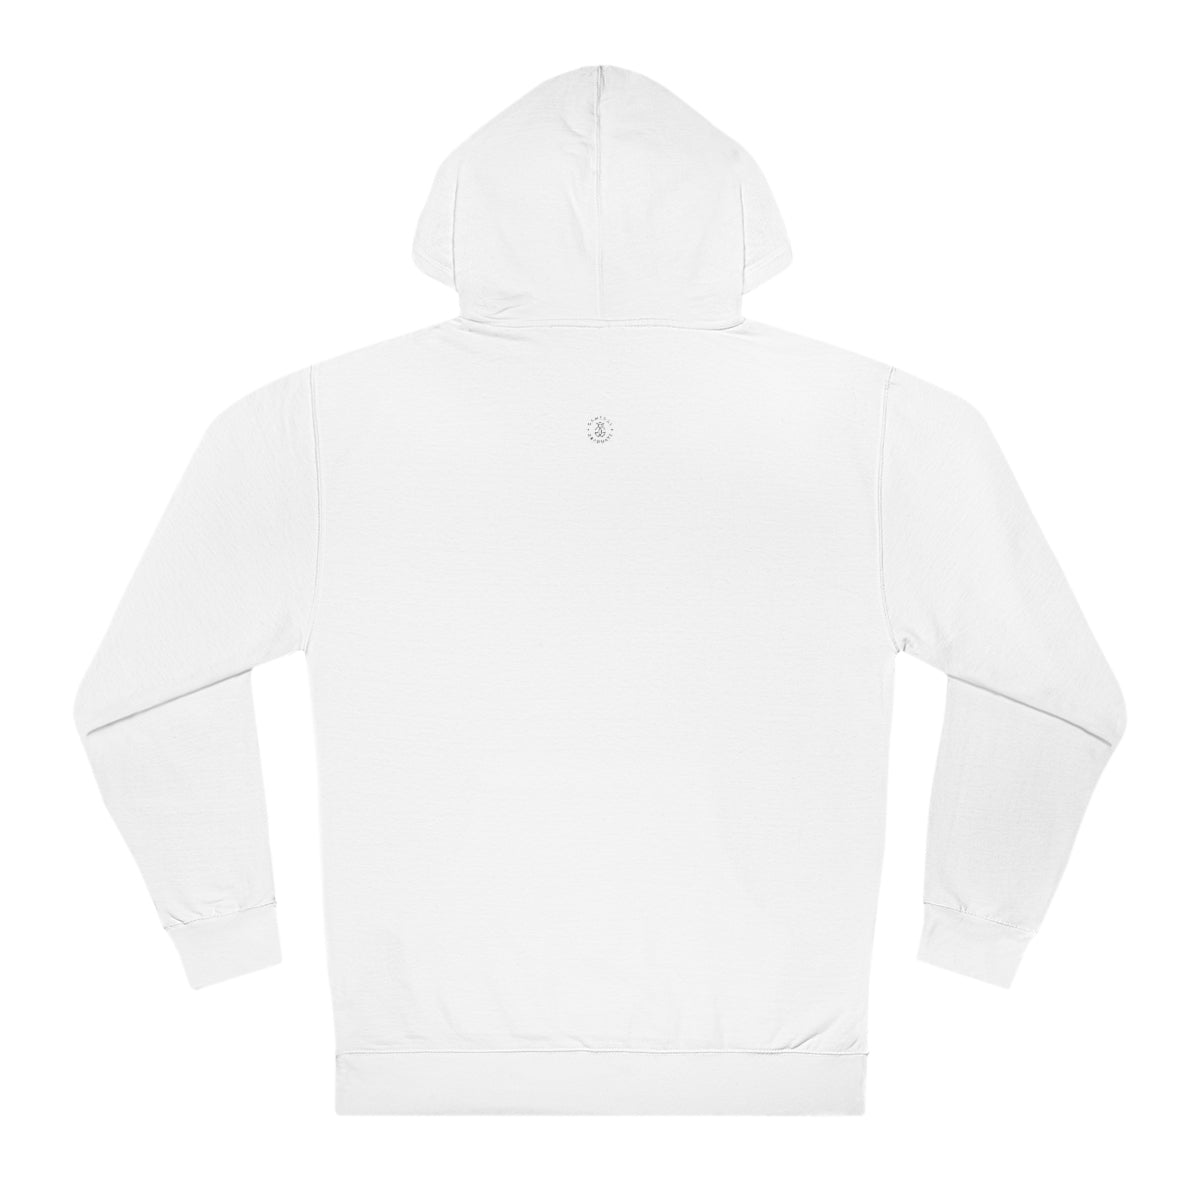 Kentucky Hooded Sweatshirt - GG - ITC